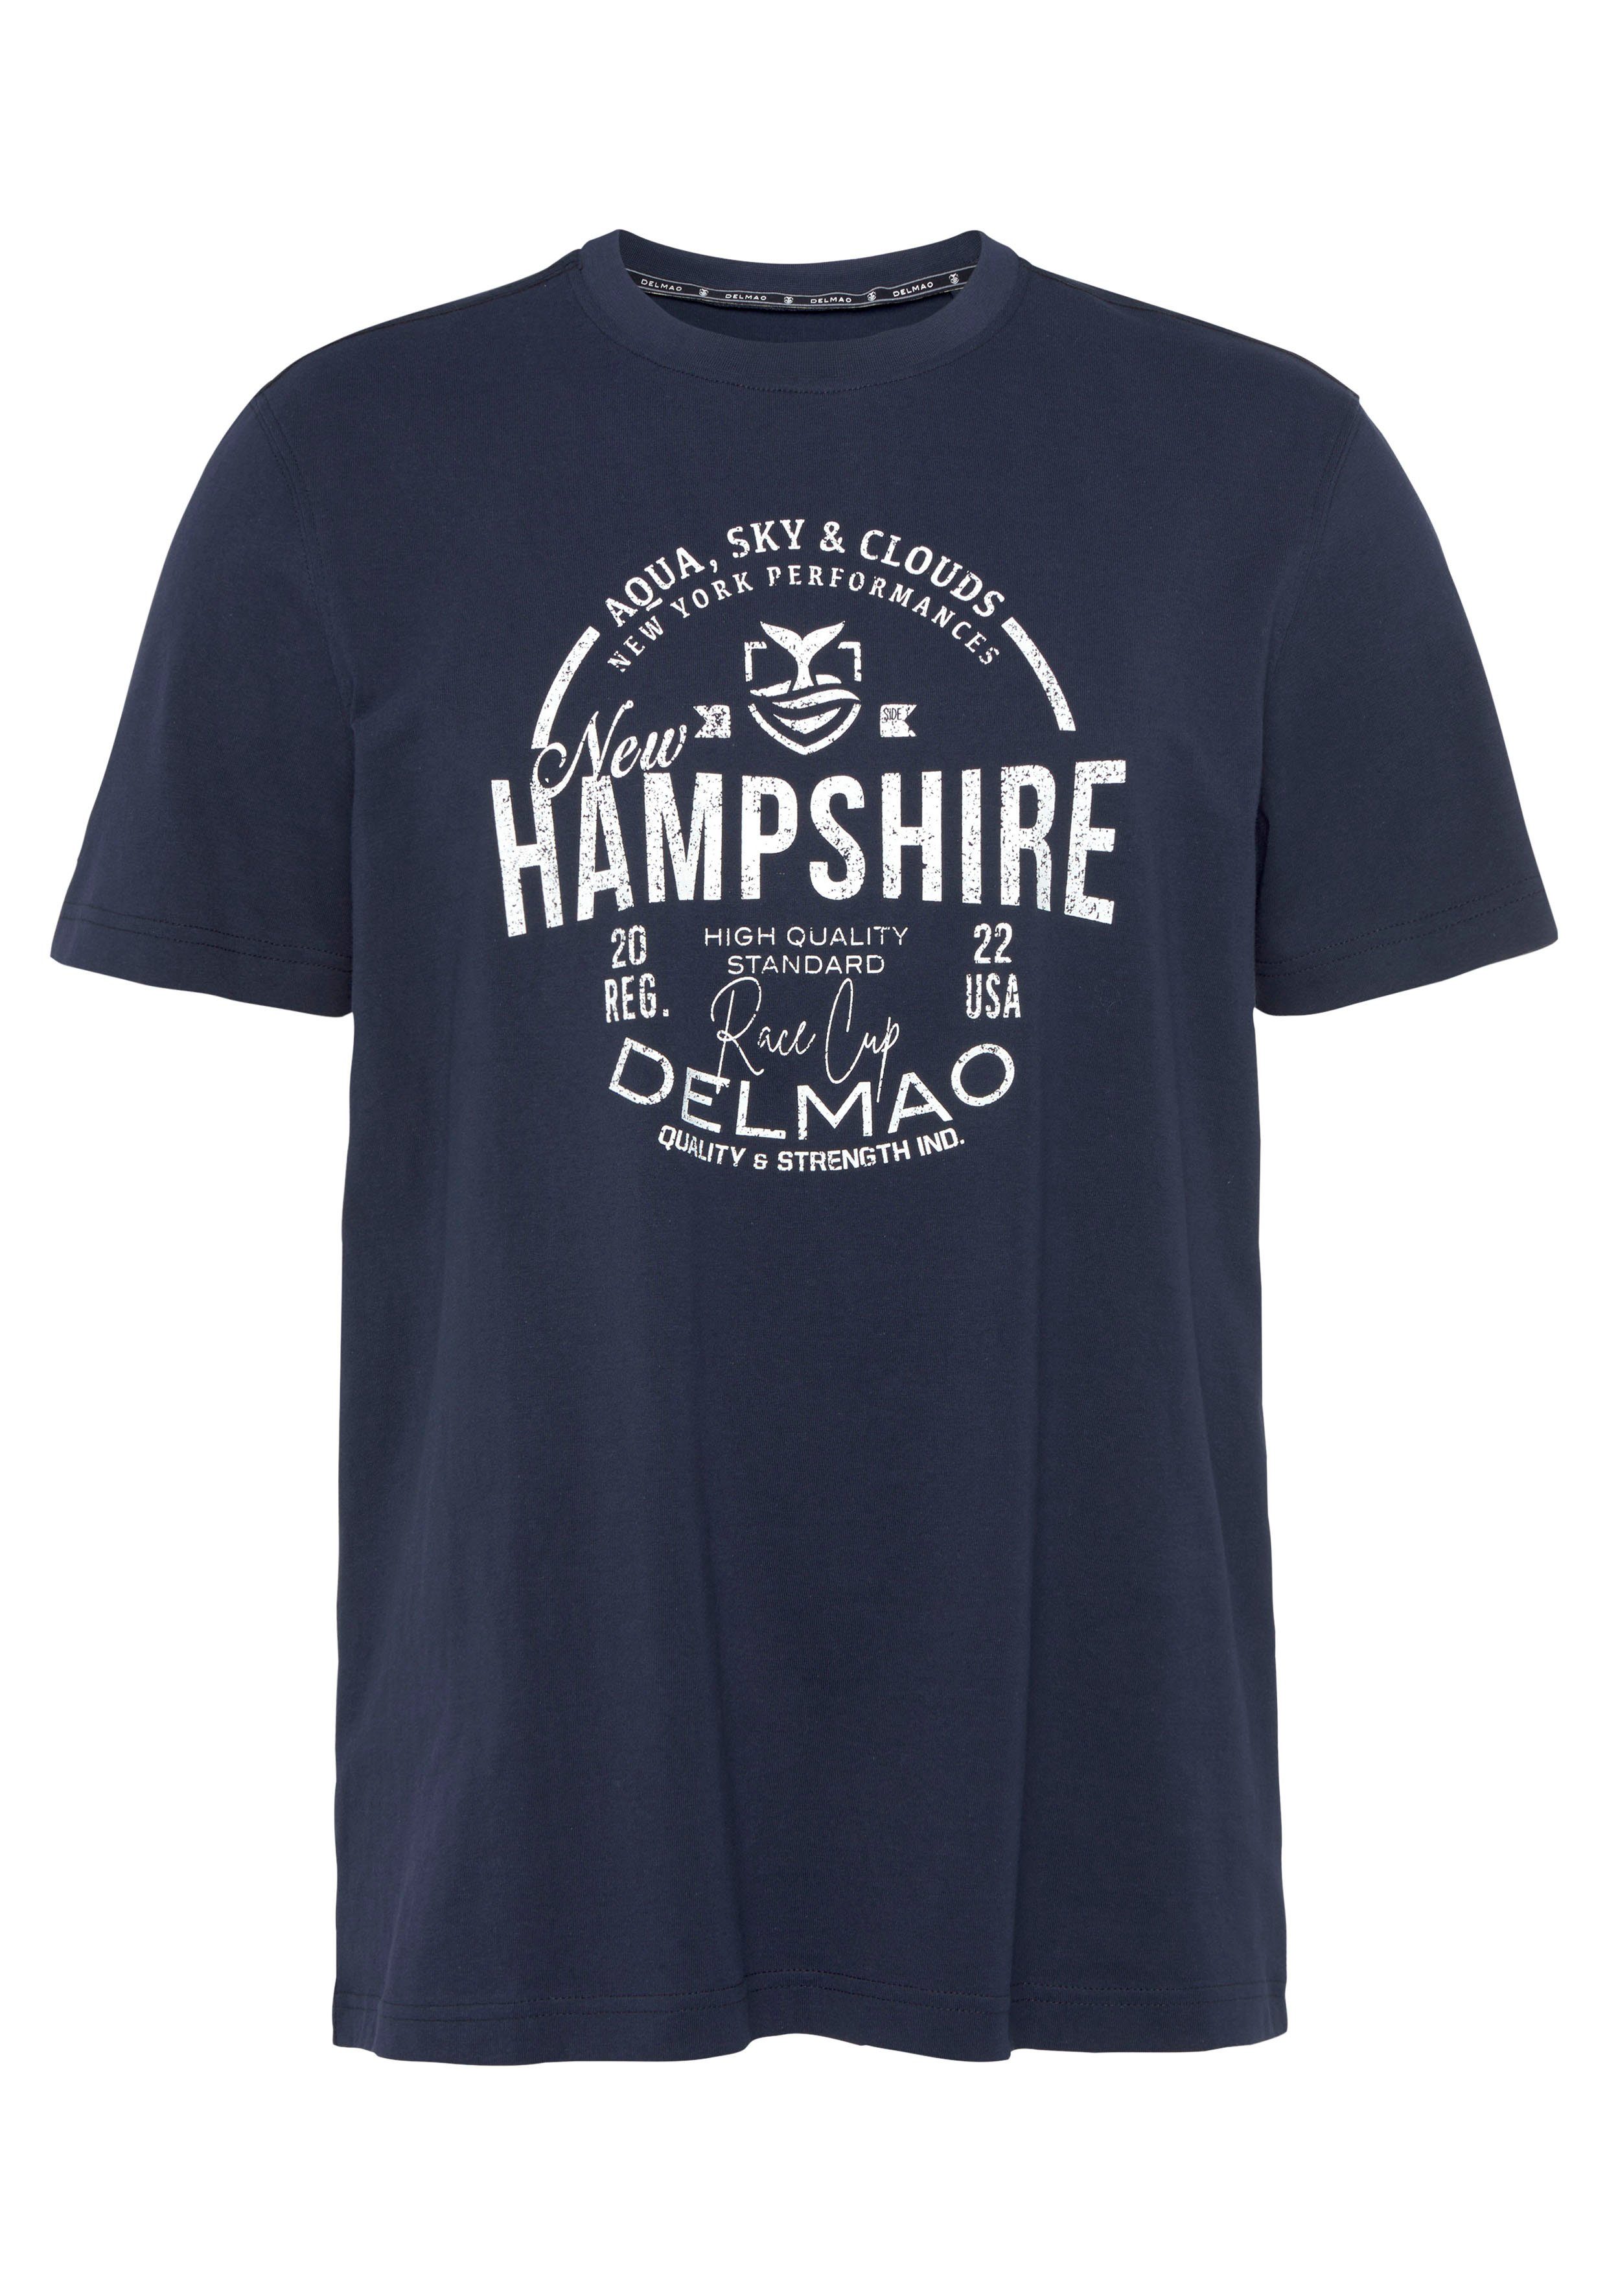 MARKE! - T-Shirt DELMAO Brustprint marine mit NEUE